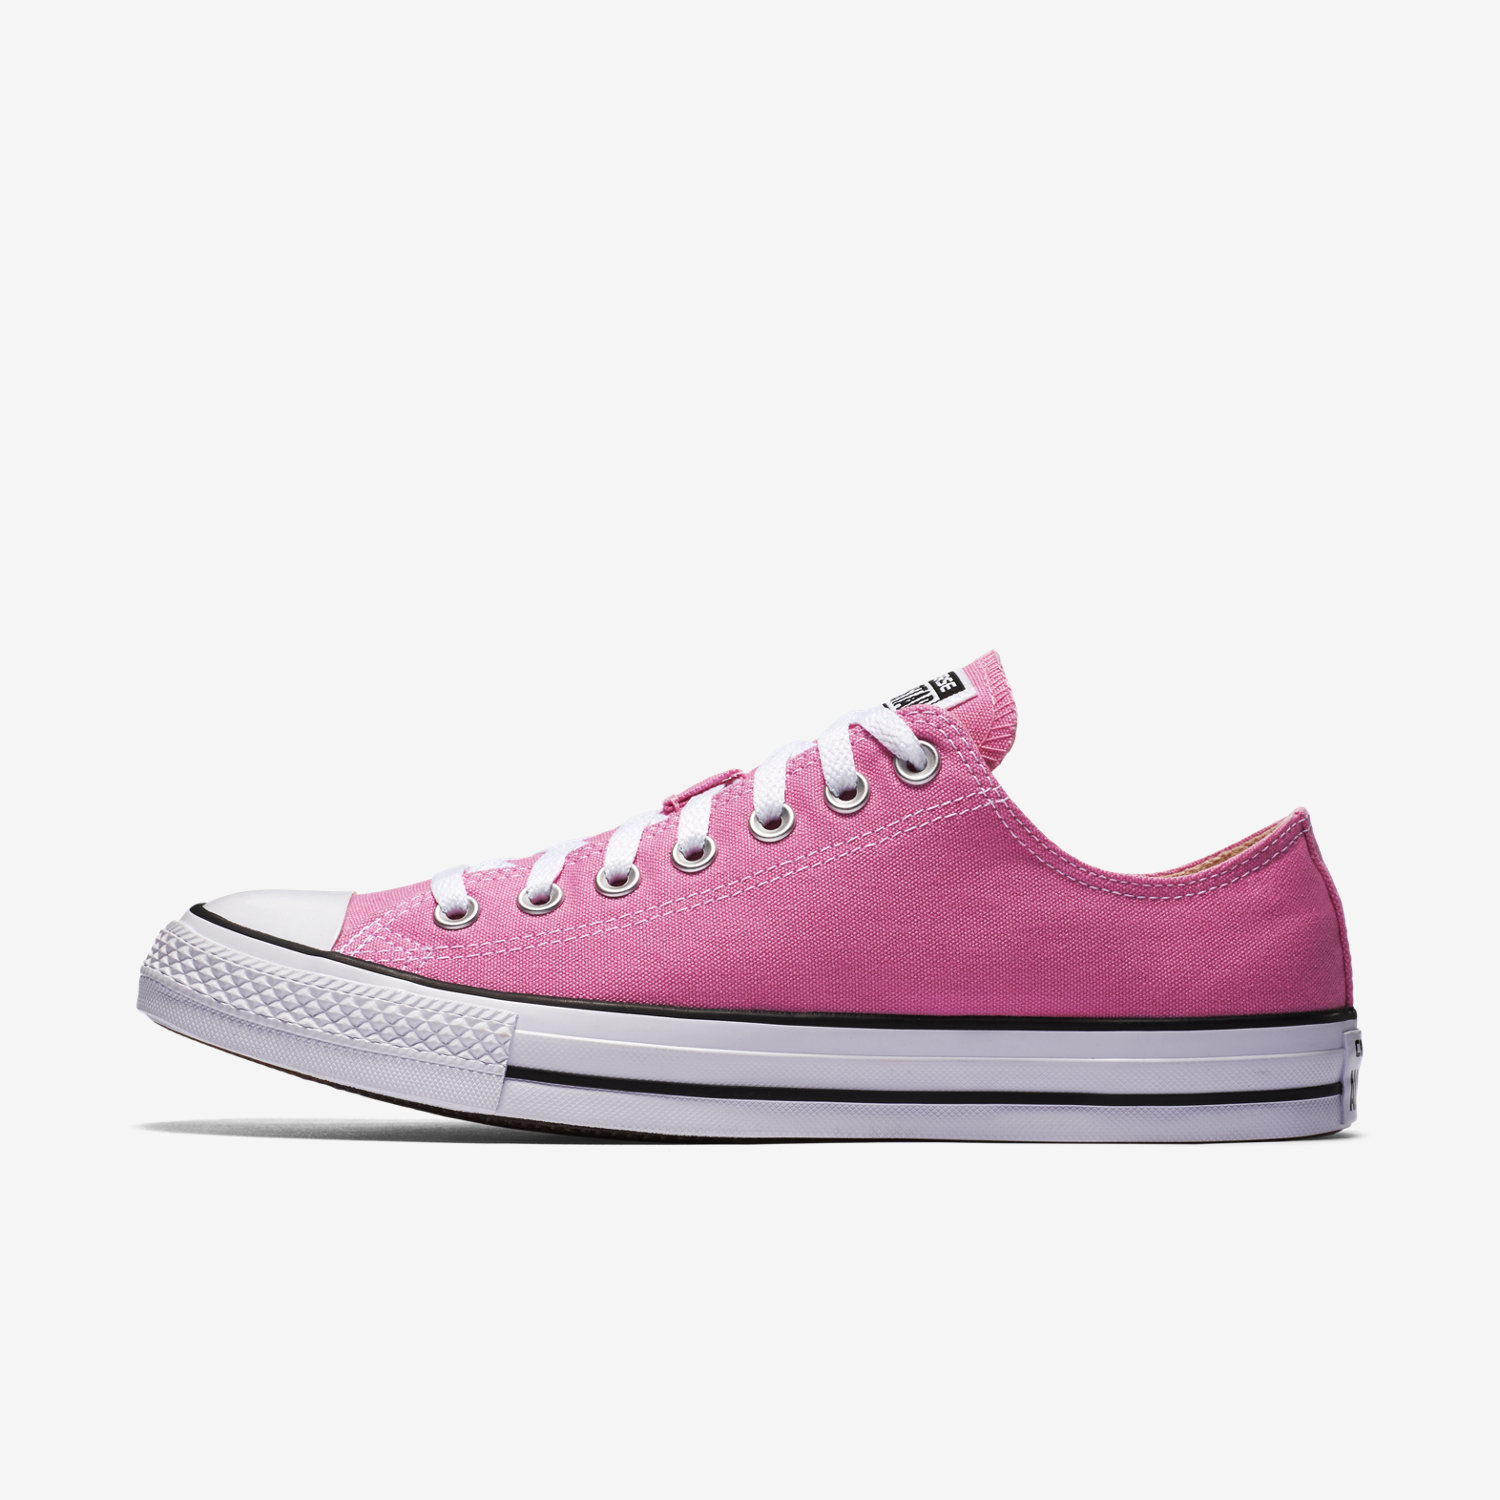 παπουτσια outdoor γυναικεια Converse Chuck Taylor All Star χαμηλα ροζ 20739135WY